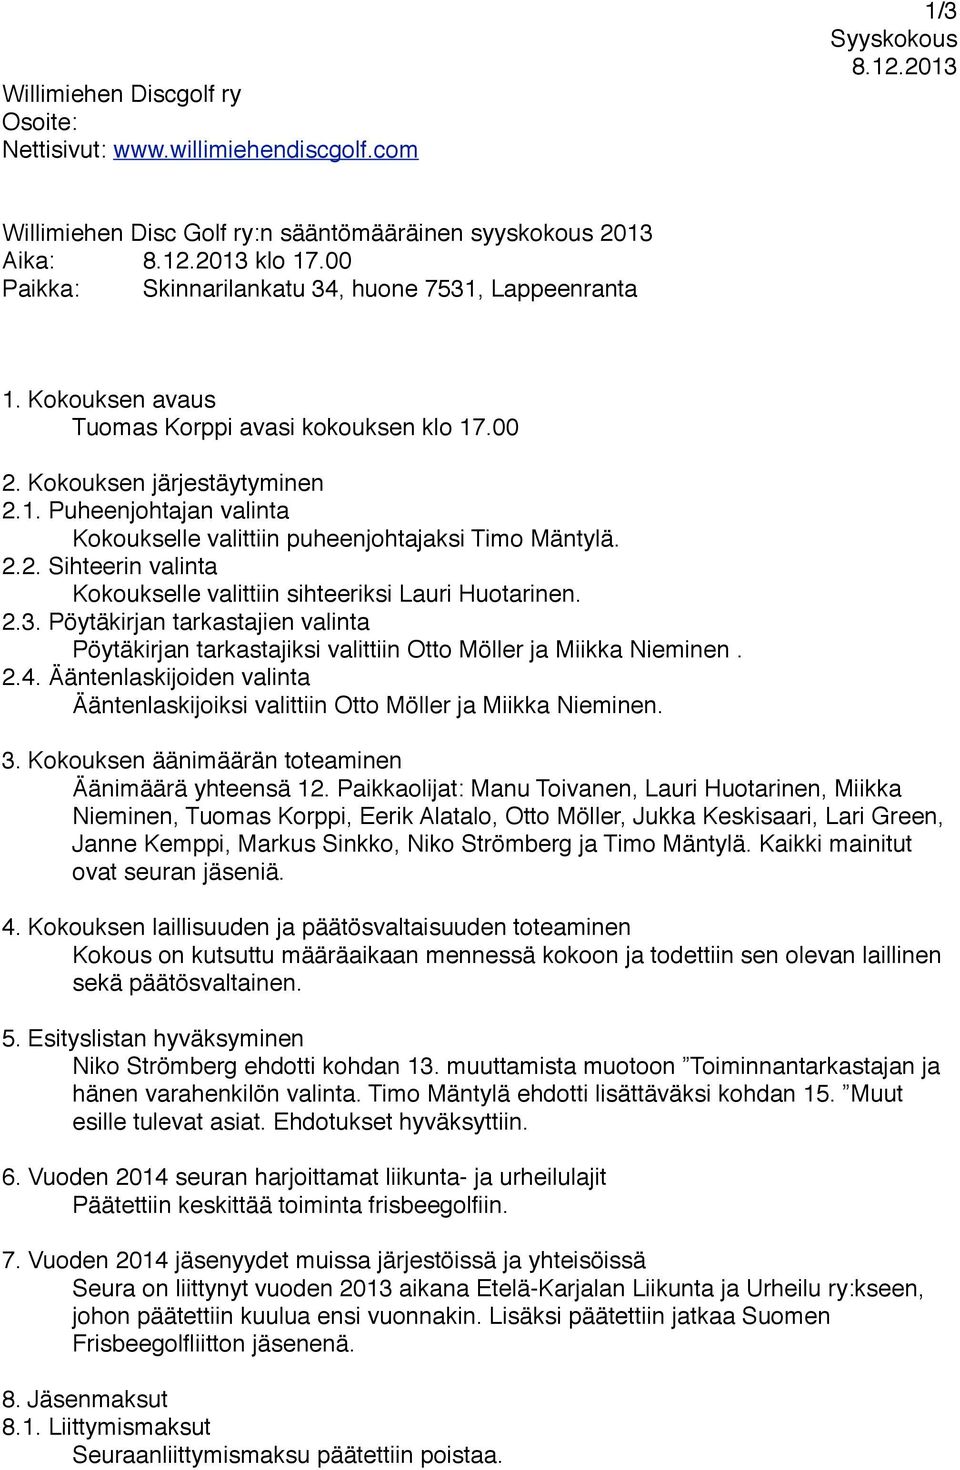 Kokoukselle valittiin puheenjohtajaksi Timo Mäntylä. 2.2. Sihteerin valinta! Kokoukselle valittiin sihteeriksi Lauri Huotarinen. 2.3. Pöytäkirjan tarkastajien valinta!